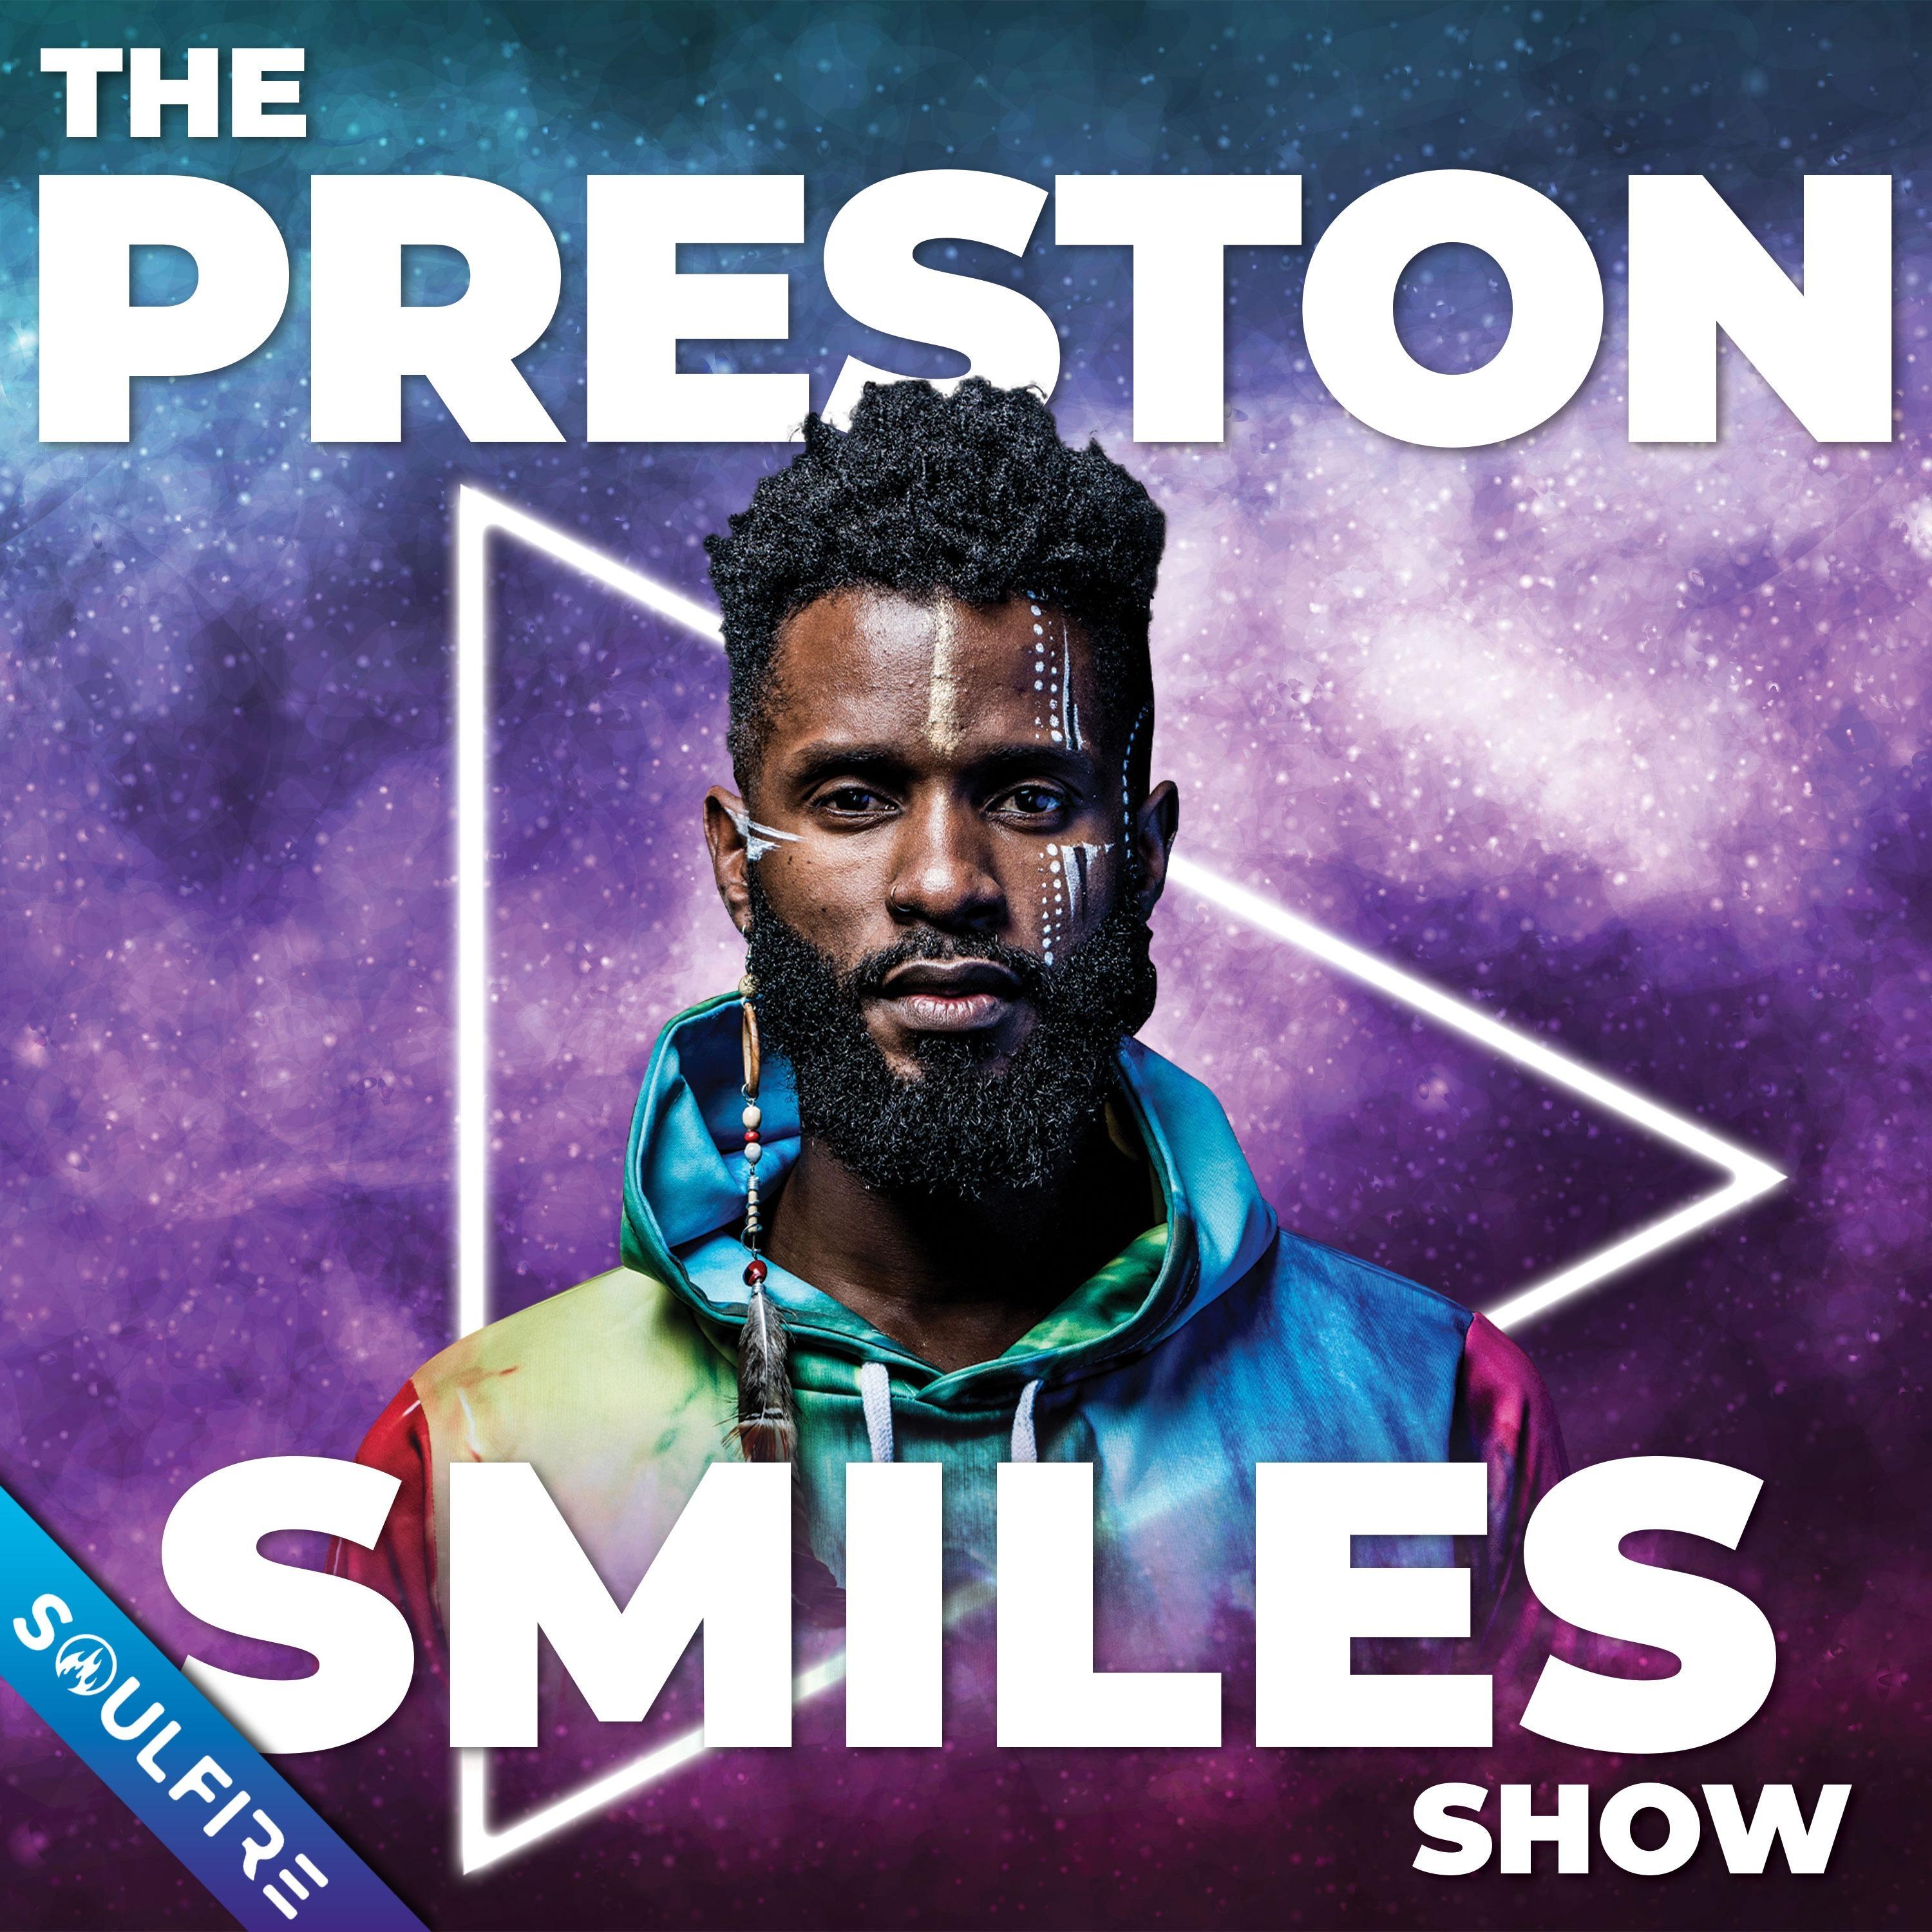 The Preston Smiles Show